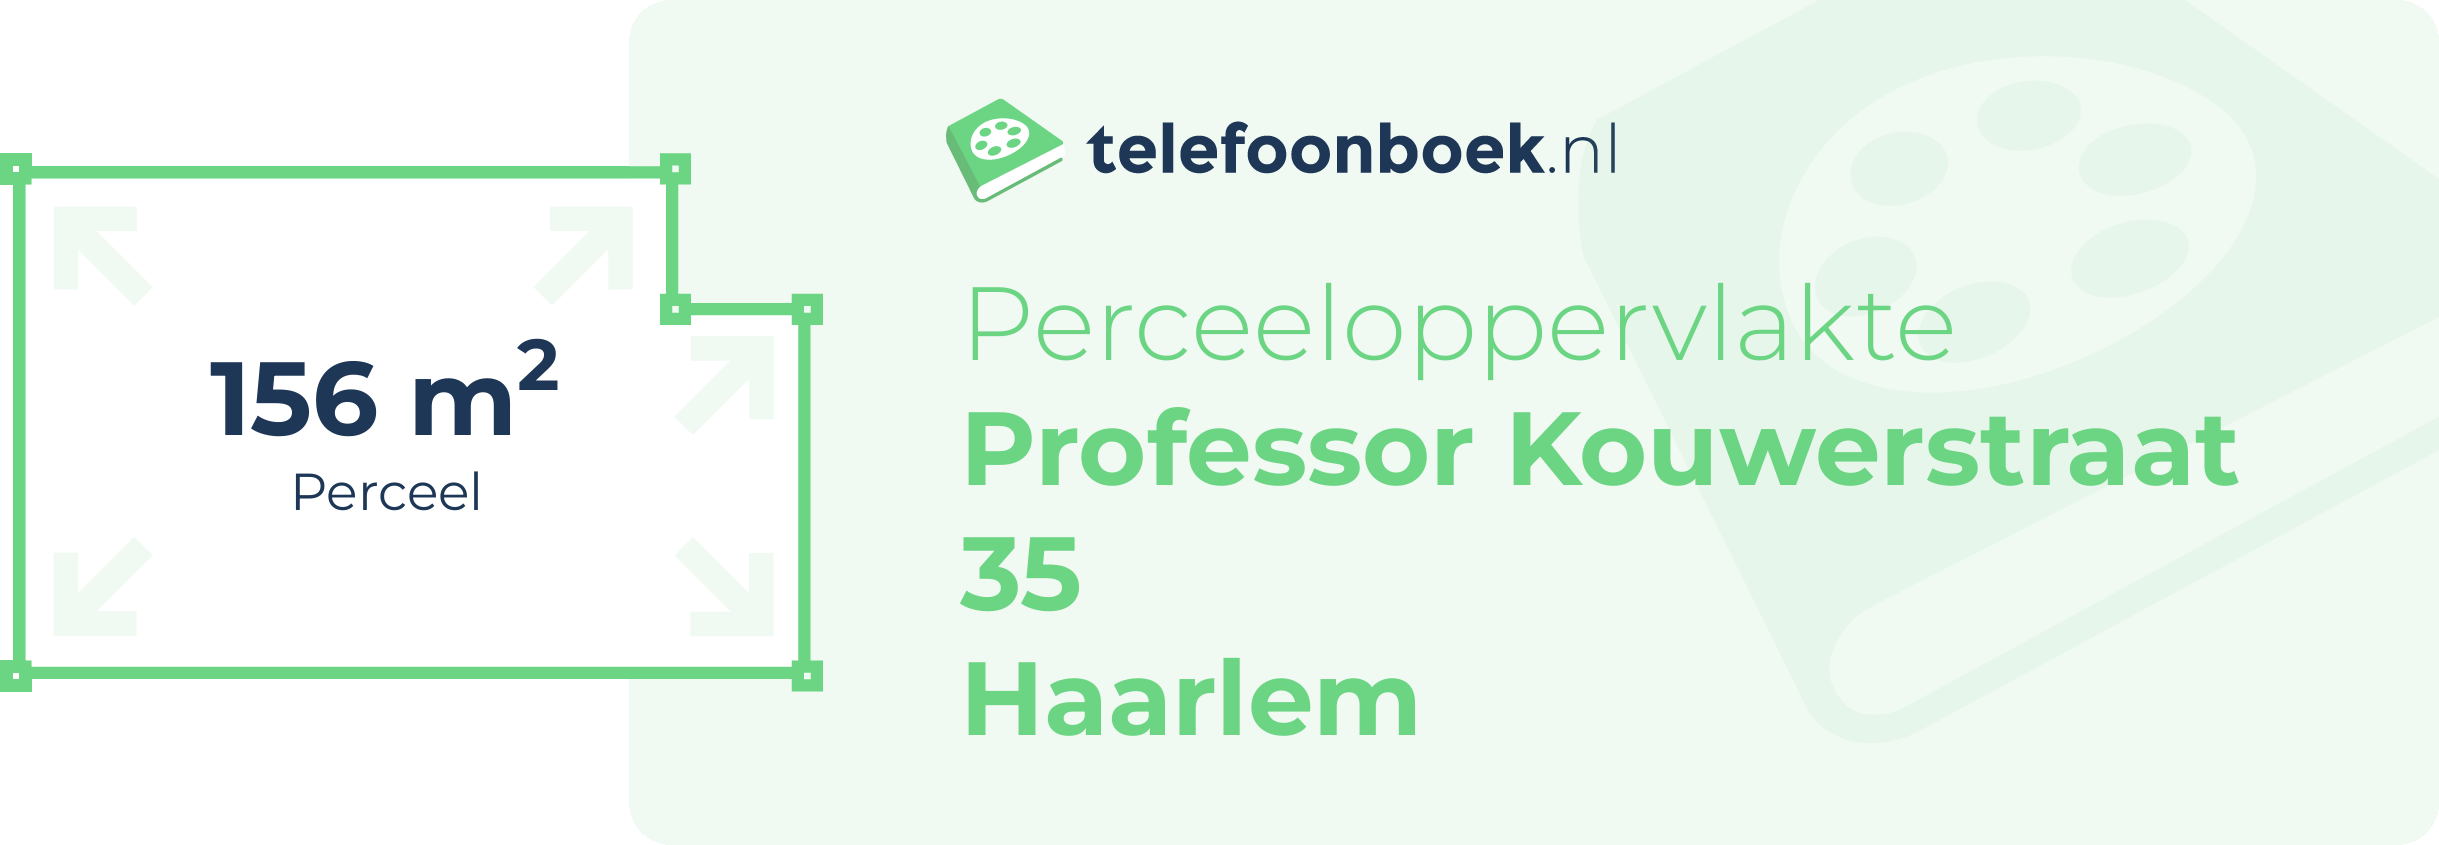 Perceeloppervlakte Professor Kouwerstraat 35 Haarlem